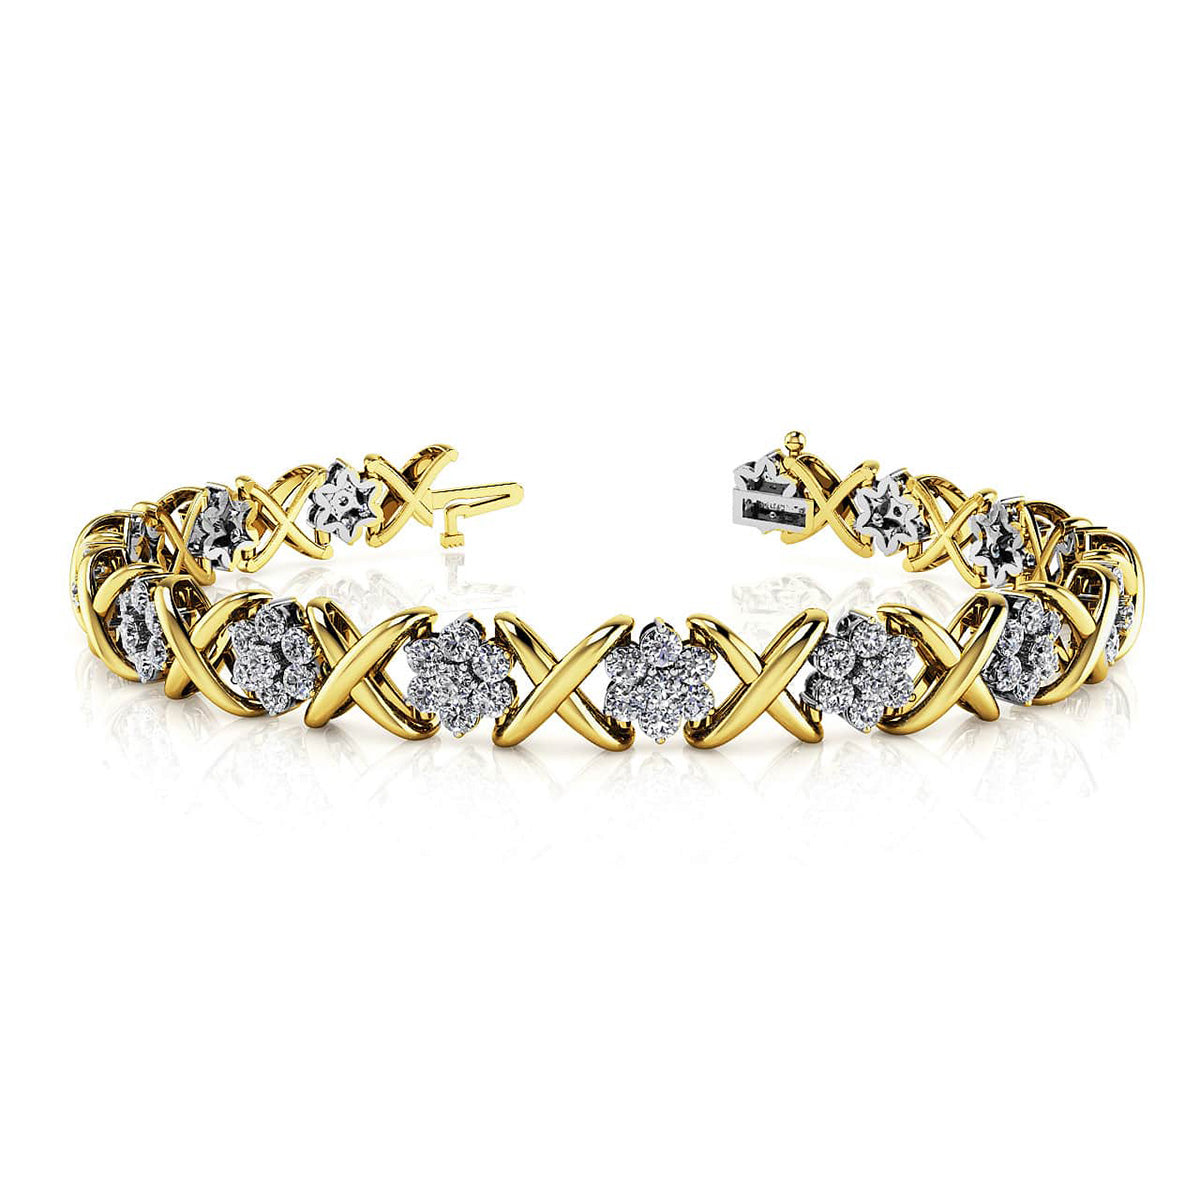 Stylized X Flower Diamond Bracelet